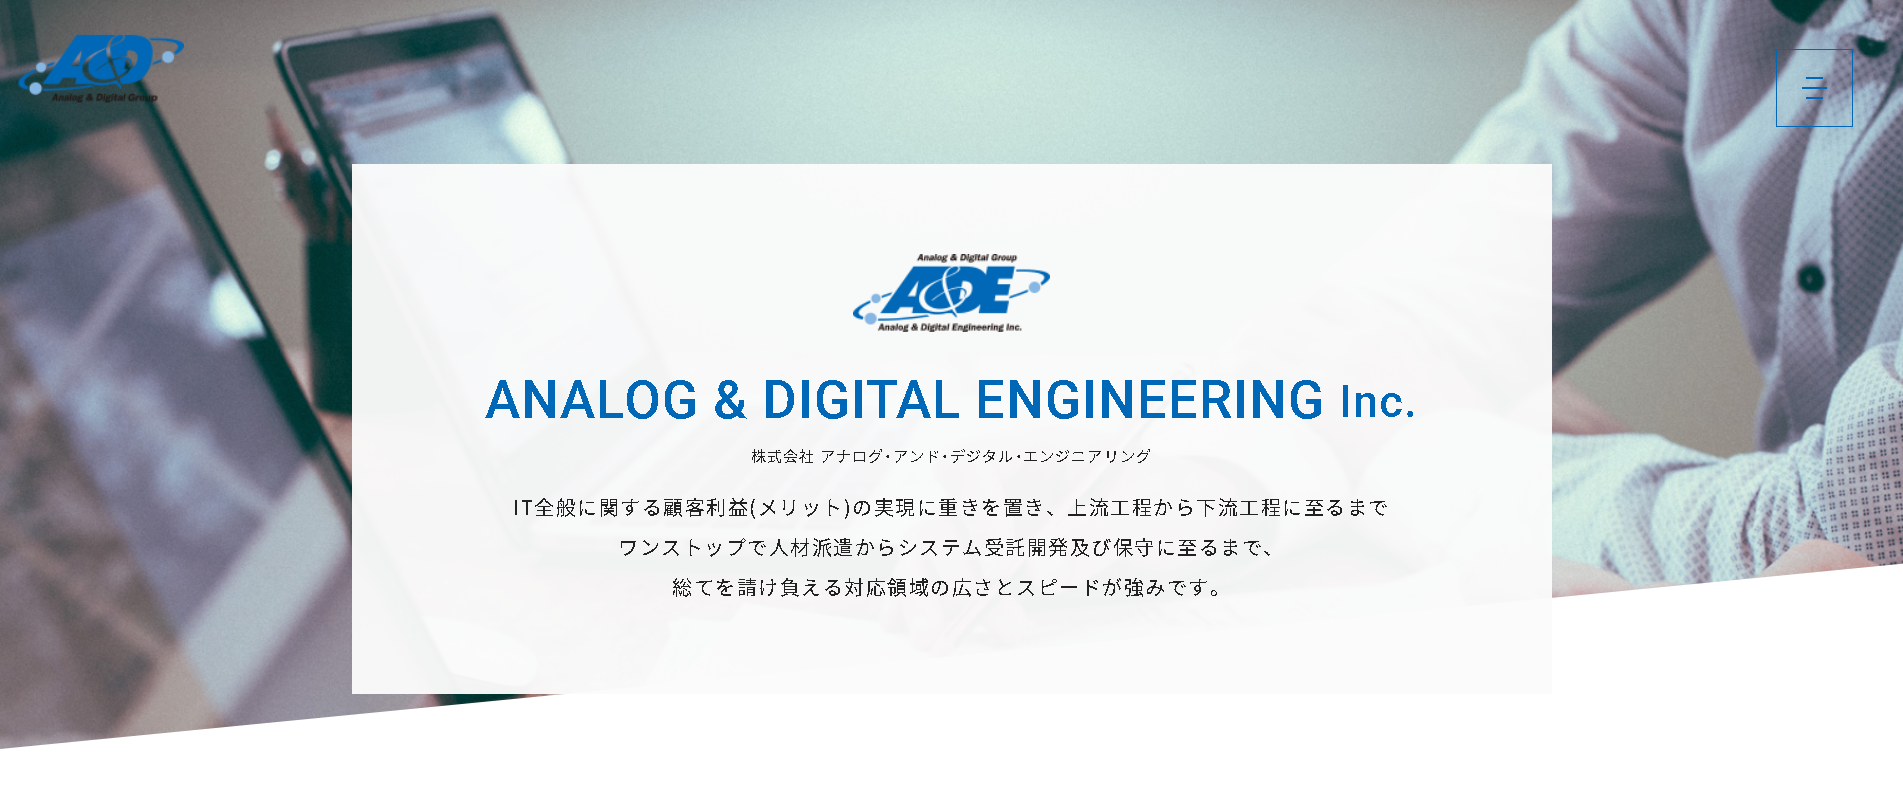 株式会社アナログ・アンド・デジタル・エンジニアリングの株式会社アナログ・アンド・デジタル・エンジニアリングサービス